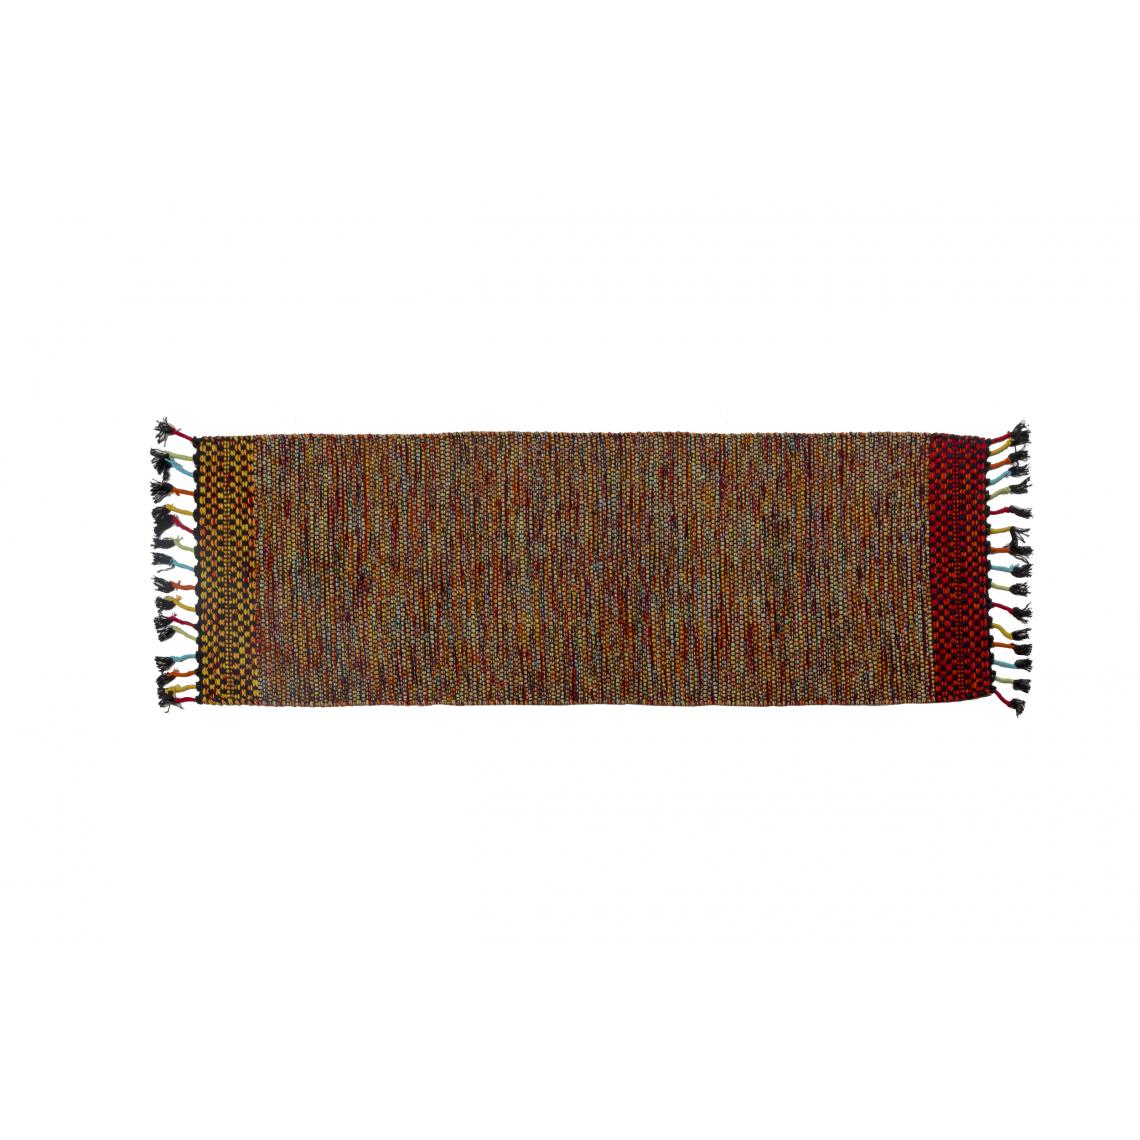 Alter - Tapis moderne Dallas, style kilim, 100% coton, multicolore, 240x60cm - Tapis